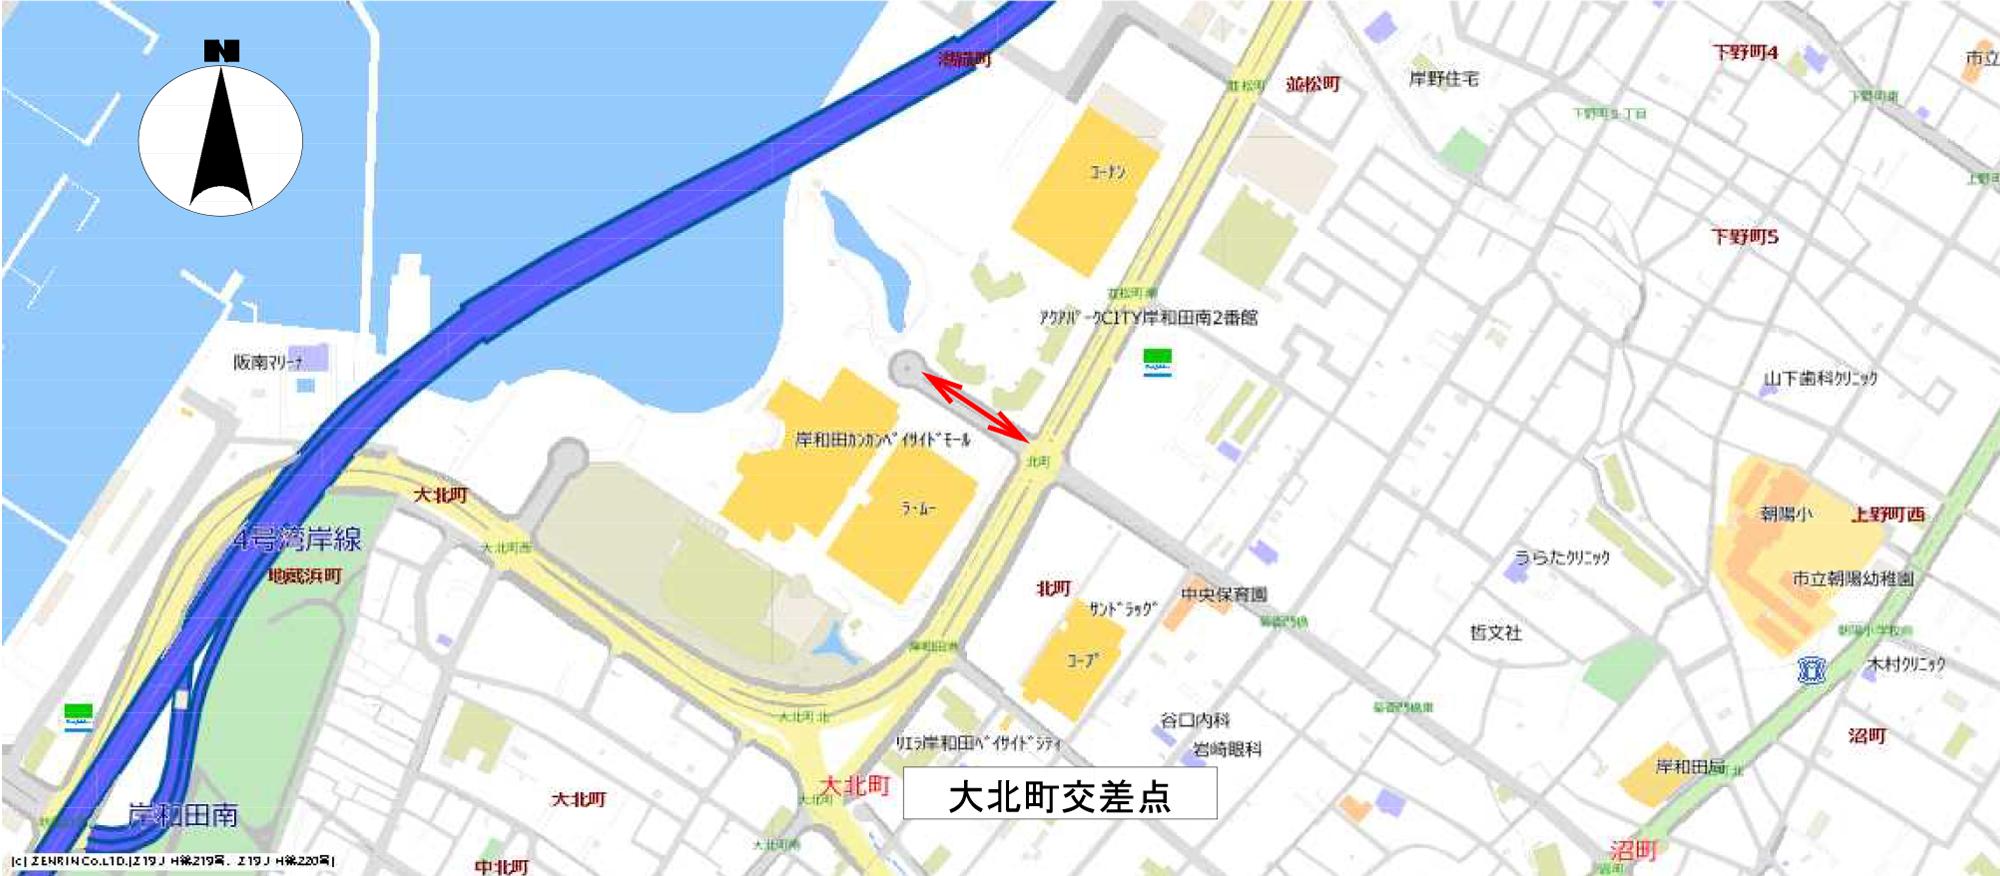 岸和田市の貨物集配中の貨物車に配意した駐車規制実施場所の地図